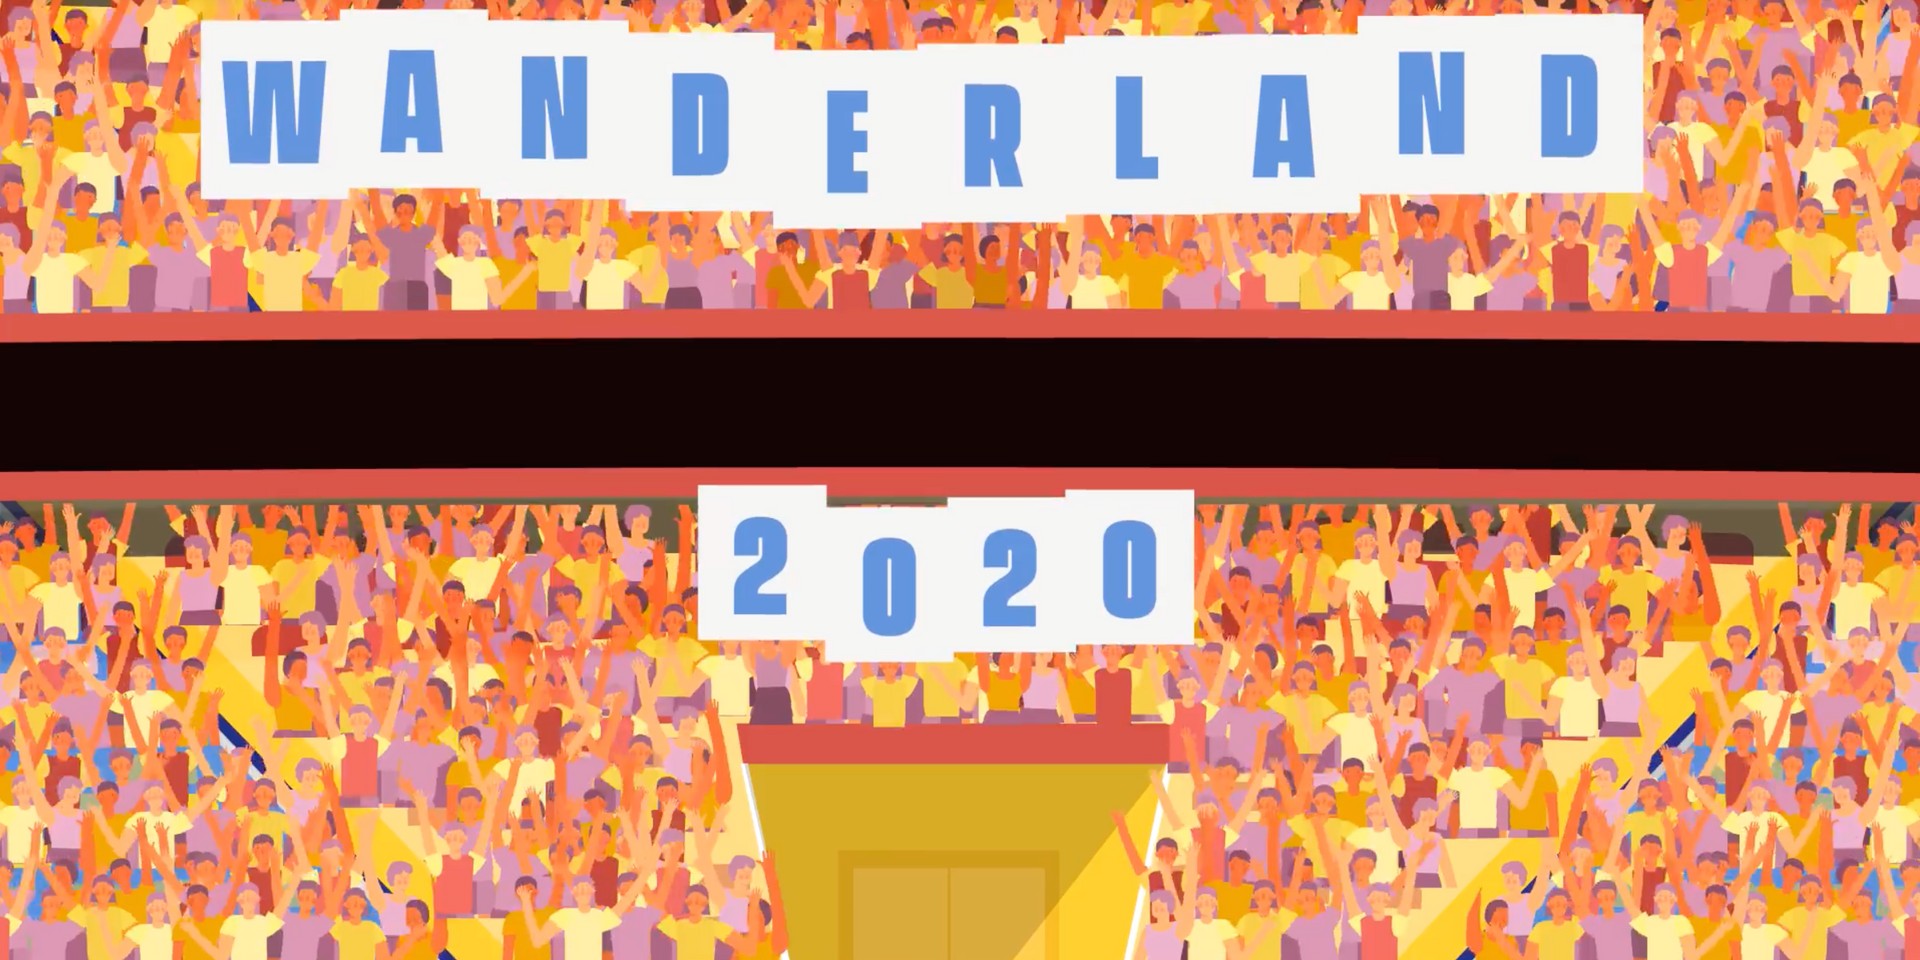 Wanderland announces 2020 festival dates 